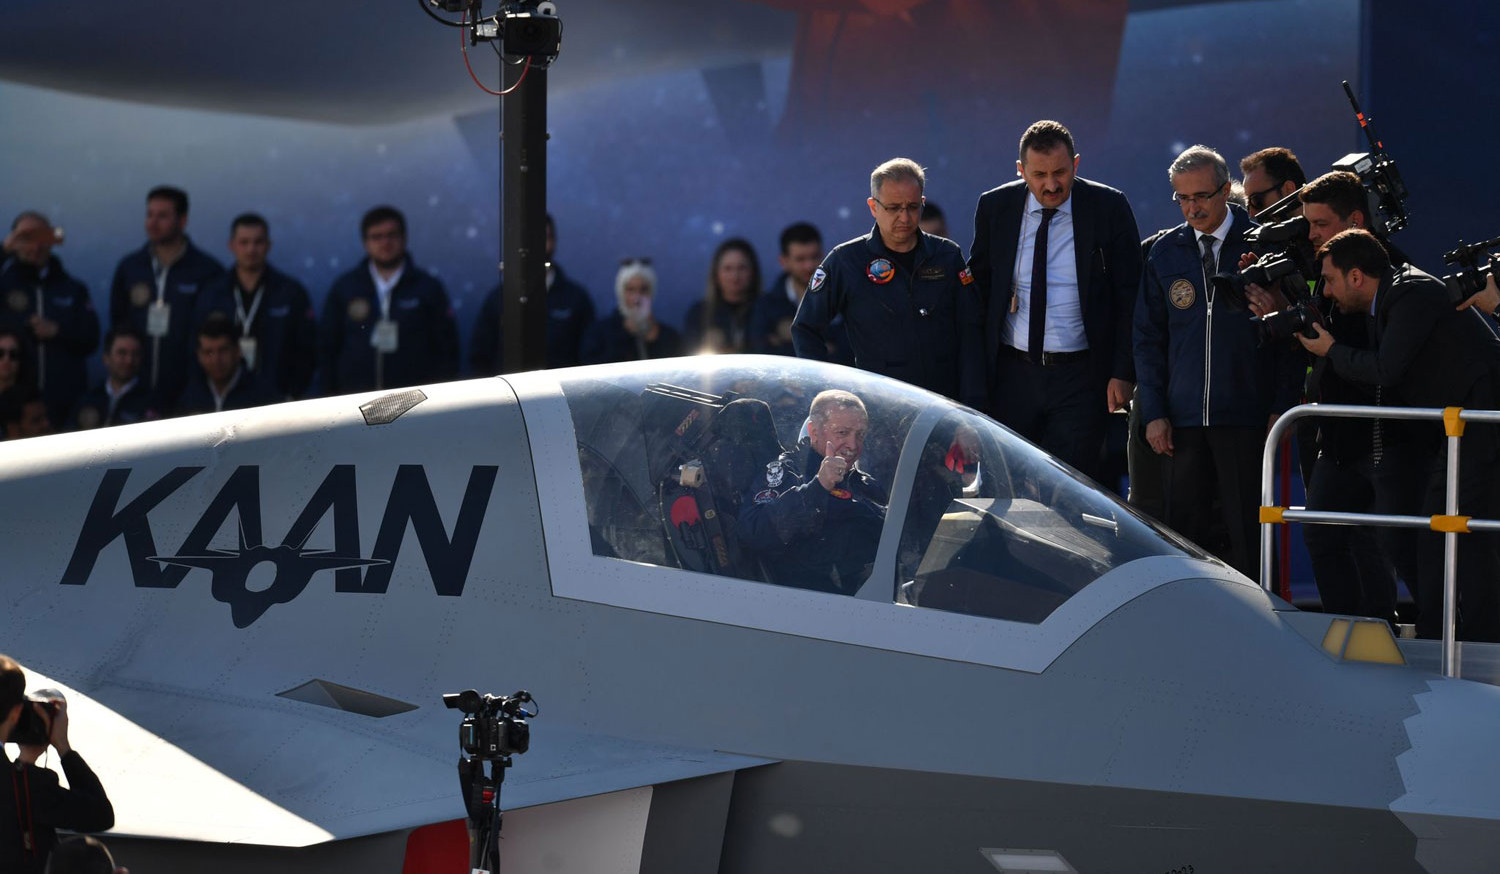 Турция и Азербайджан договорились о сотрудничестве в рамках проекта создания турецкого истребителя пятого поколения Kaan